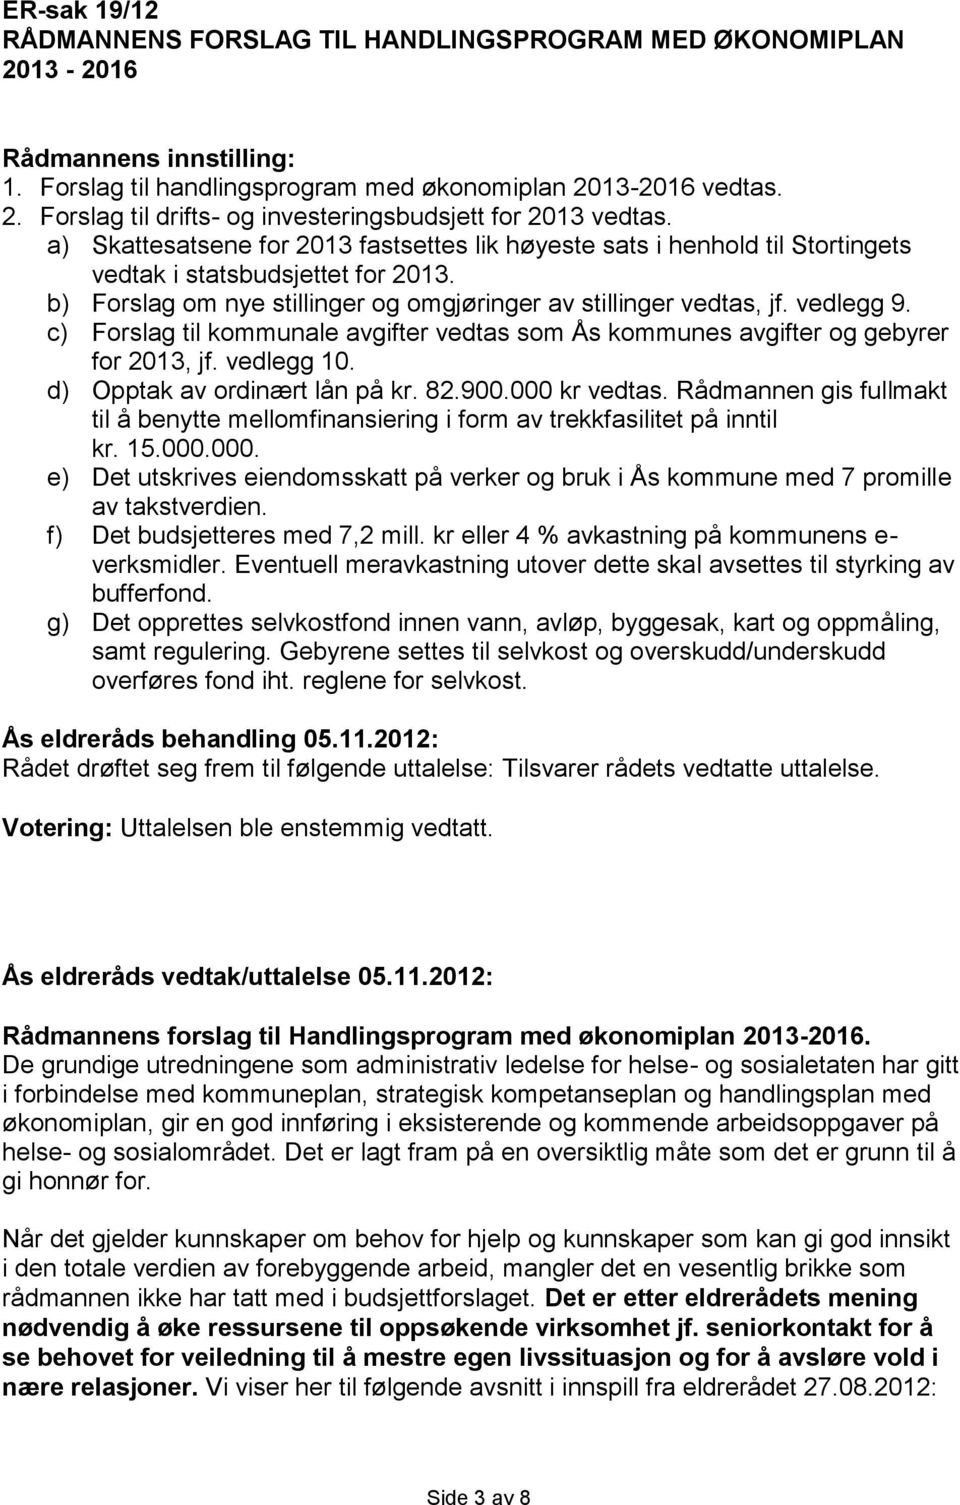 c) Forslag til kommunale avgifter vedtas som Ås kommunes avgifter og gebyrer for 2013, jf. vedlegg 10. d) Opptak av ordinært lån på kr. 82.900.000 kr vedtas.